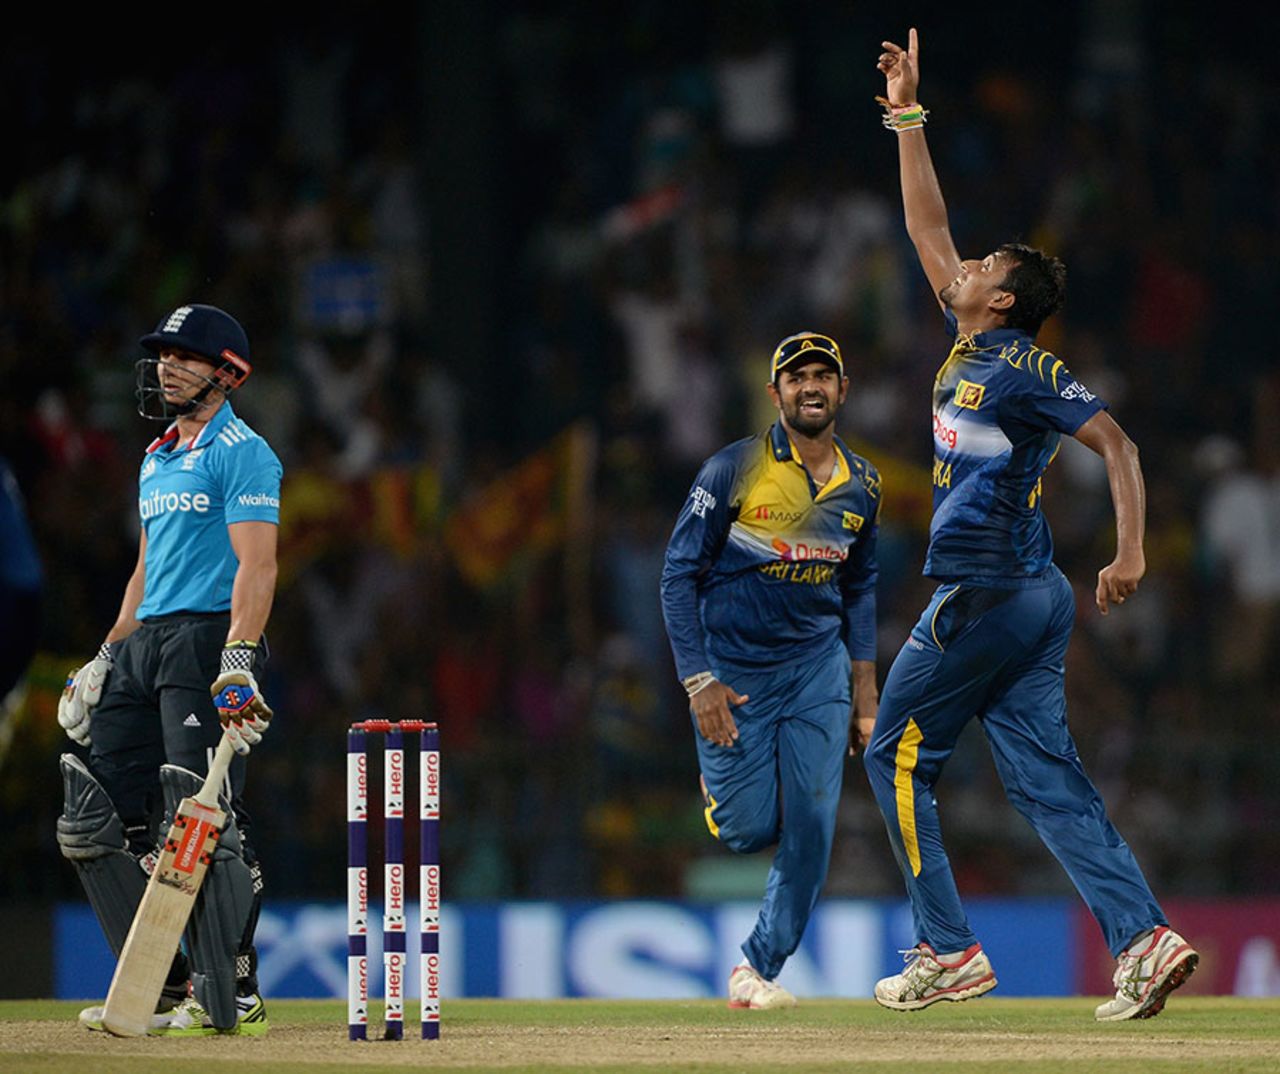 Suranga Lakmal celebrates removing James Taylor, Sri Lanka v England, 7th ODI, Colombo, December 16, 2014